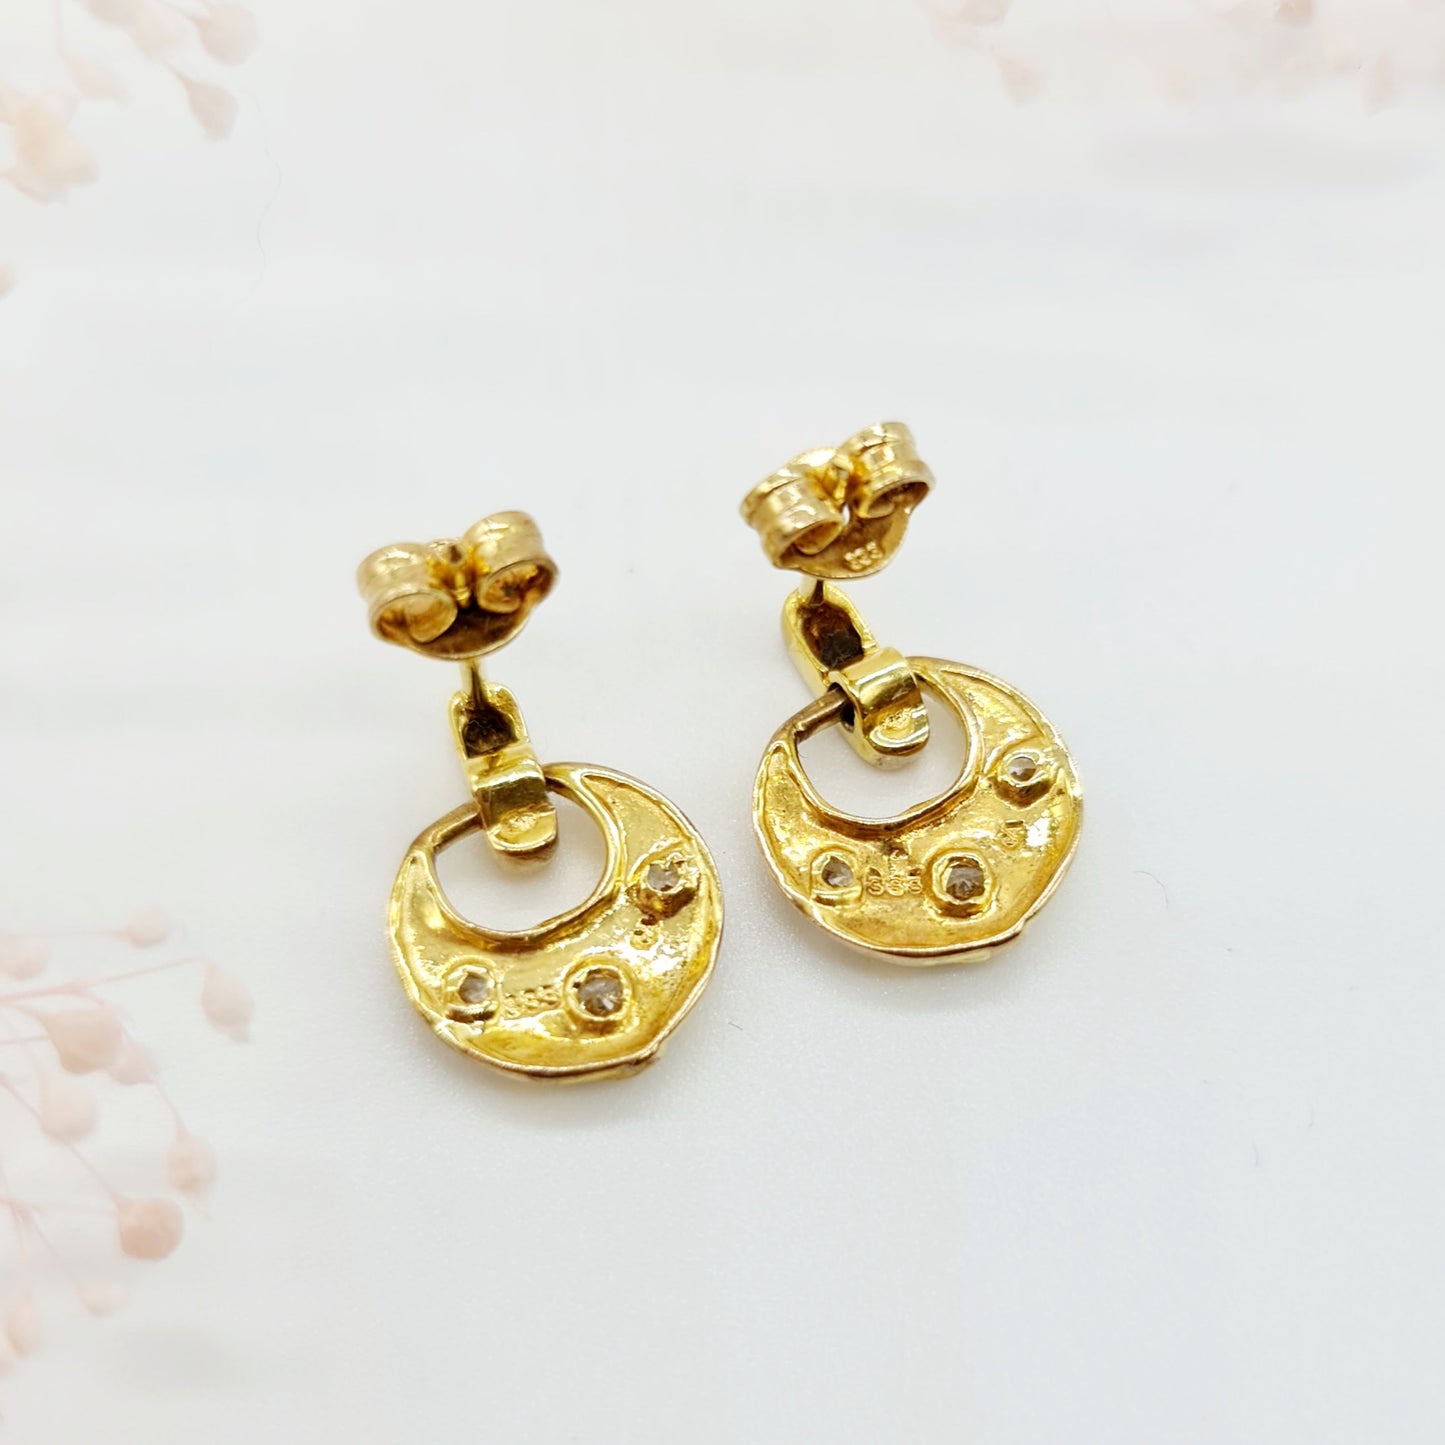 Vintage Ohrringe aus 333 Gelbgold mit 3 Zirkonia-Steinen, Elegante Retro-Schönheit